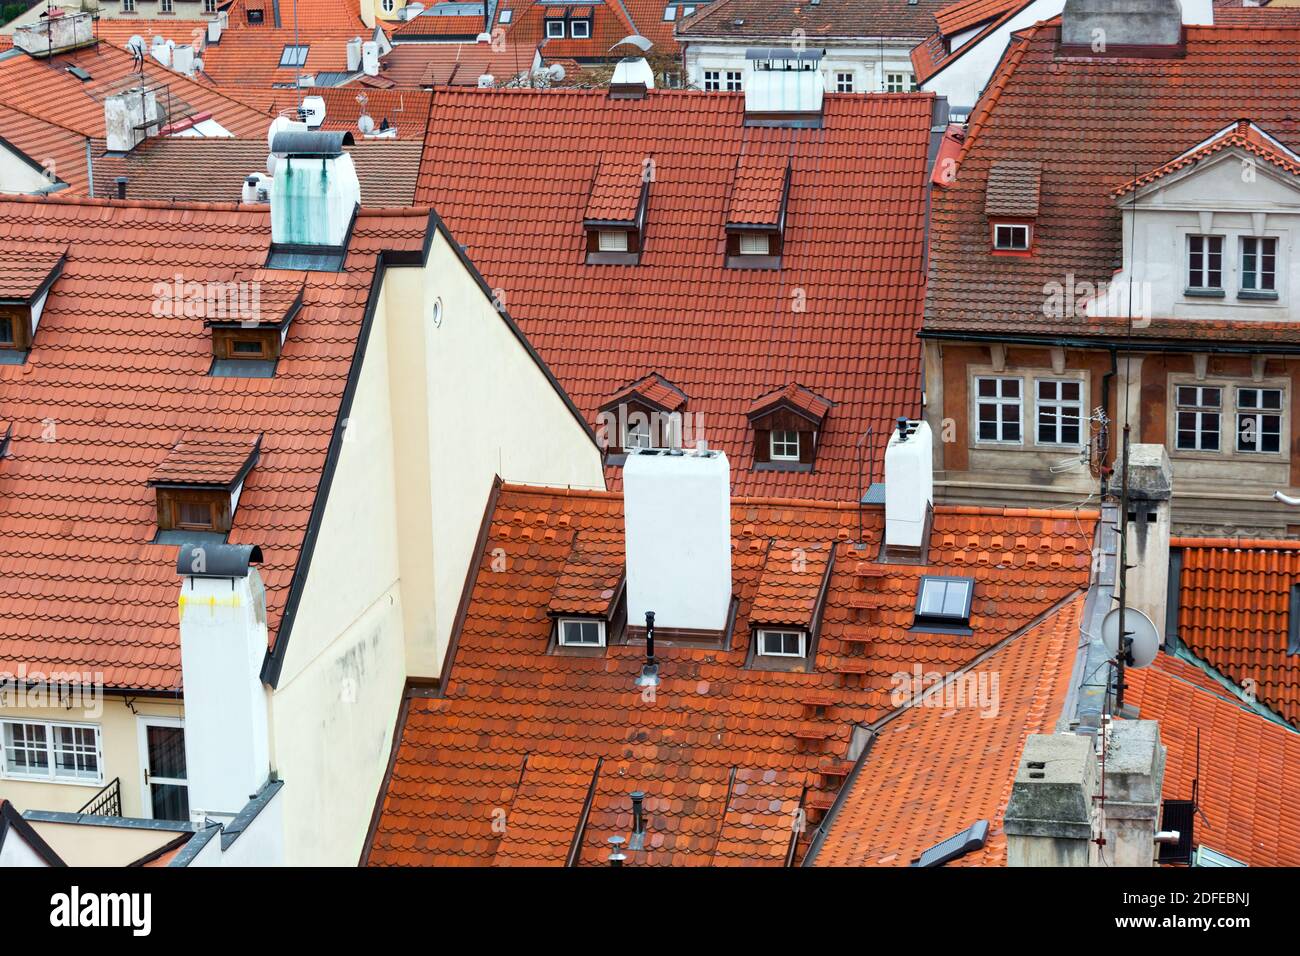 Mala Strana Prague Rooftops Stock Photo